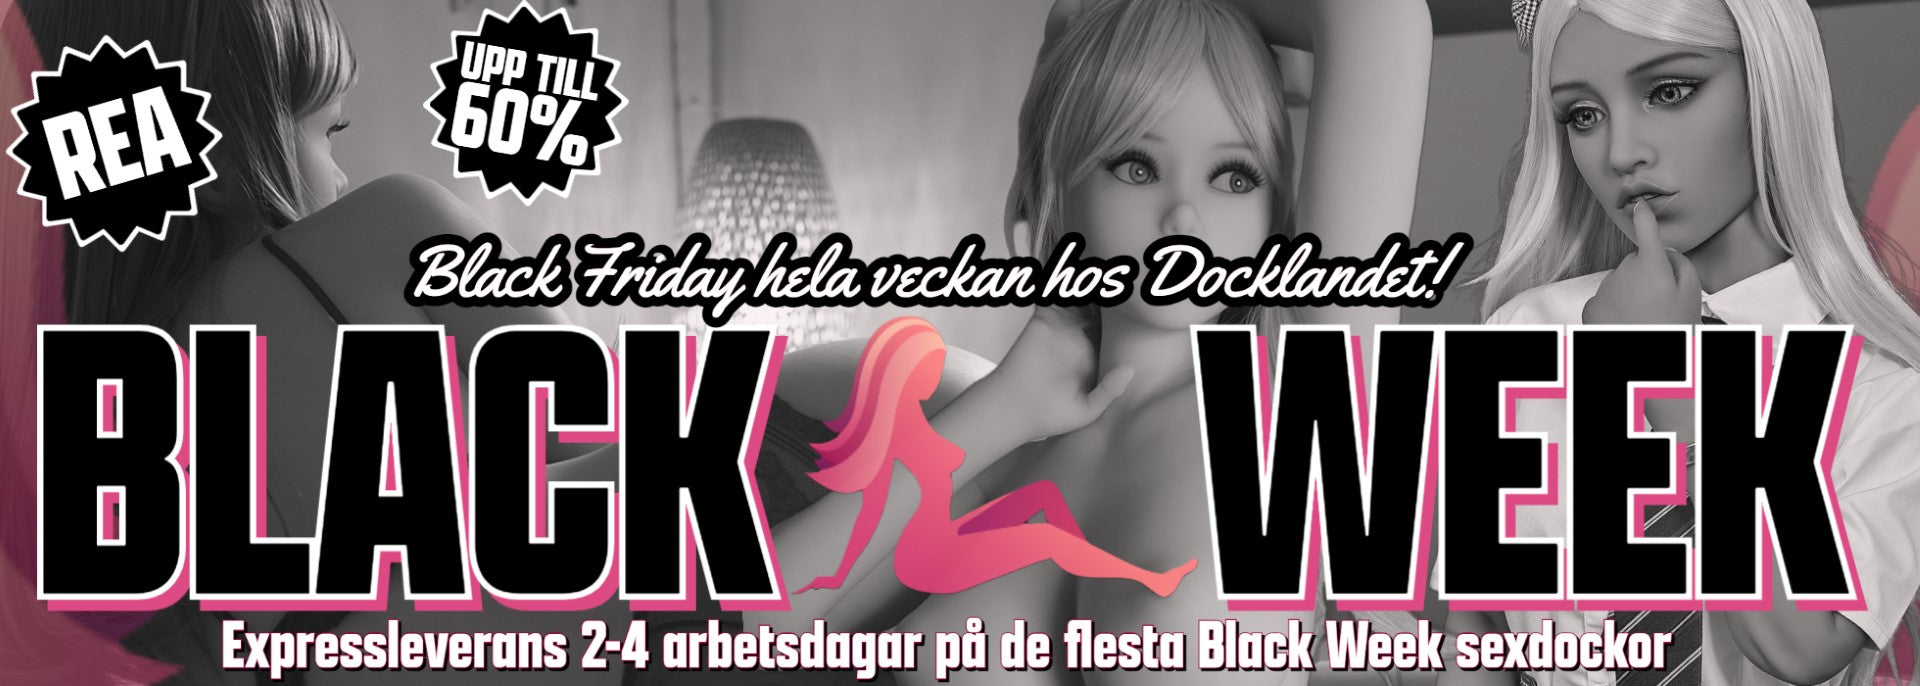 Black Week Rea på Sexdockor hos Docklandet. Köp din Real Doll Hos Docklandets Black Friday Week idag! Black Friday hela veckan på sexdockor hos Docklandet: